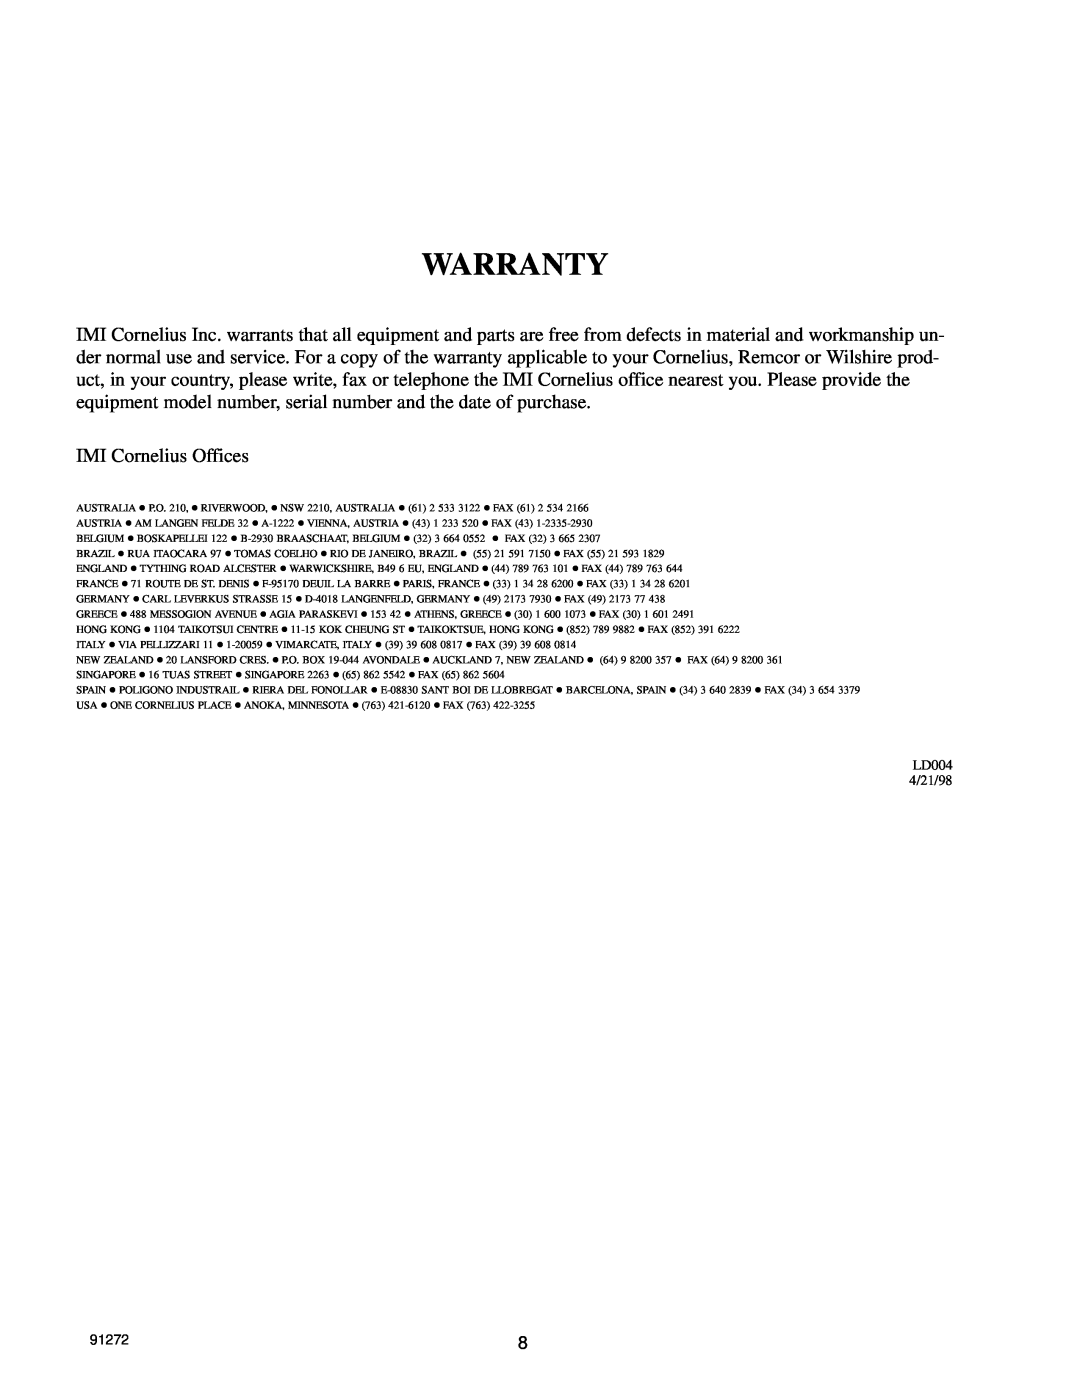 Cornelius CH951, CH750, CH751 manual Warranty, IMI Cornelius Offices, LD004 4/21/98, 91272 